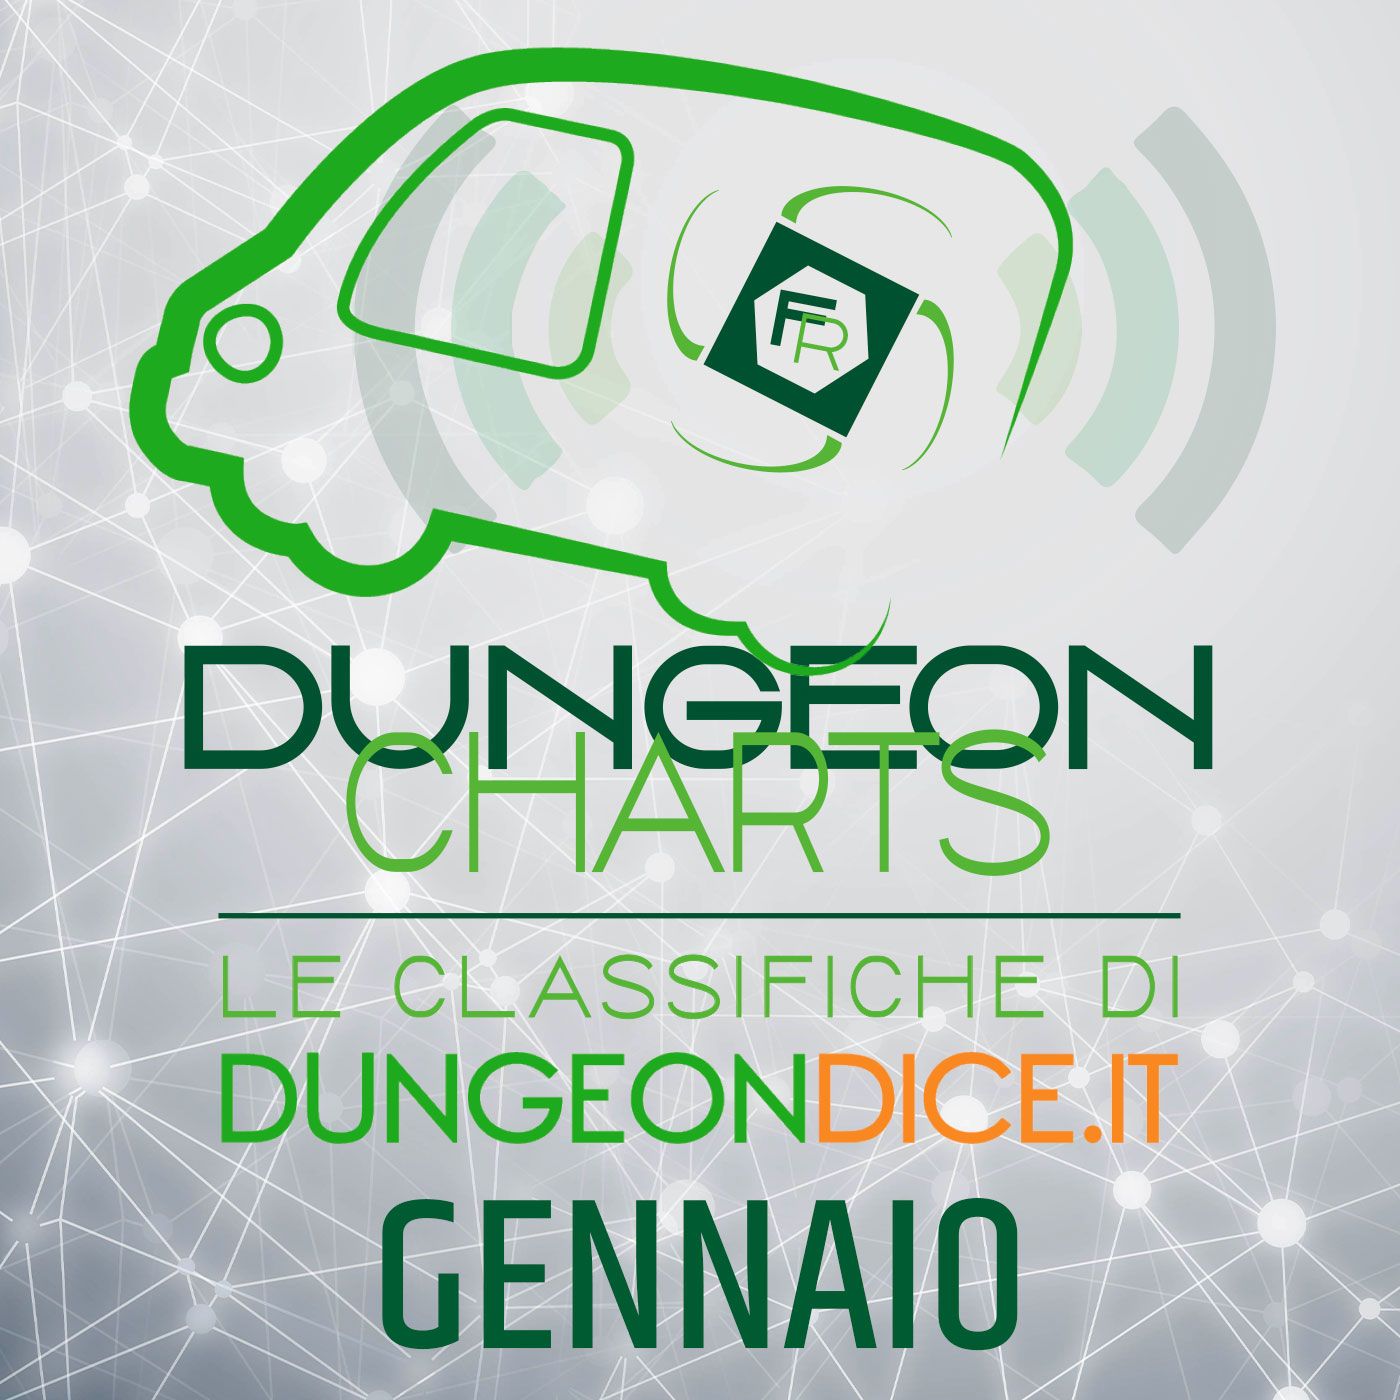 Dungeon Charts - Gennaio 2021